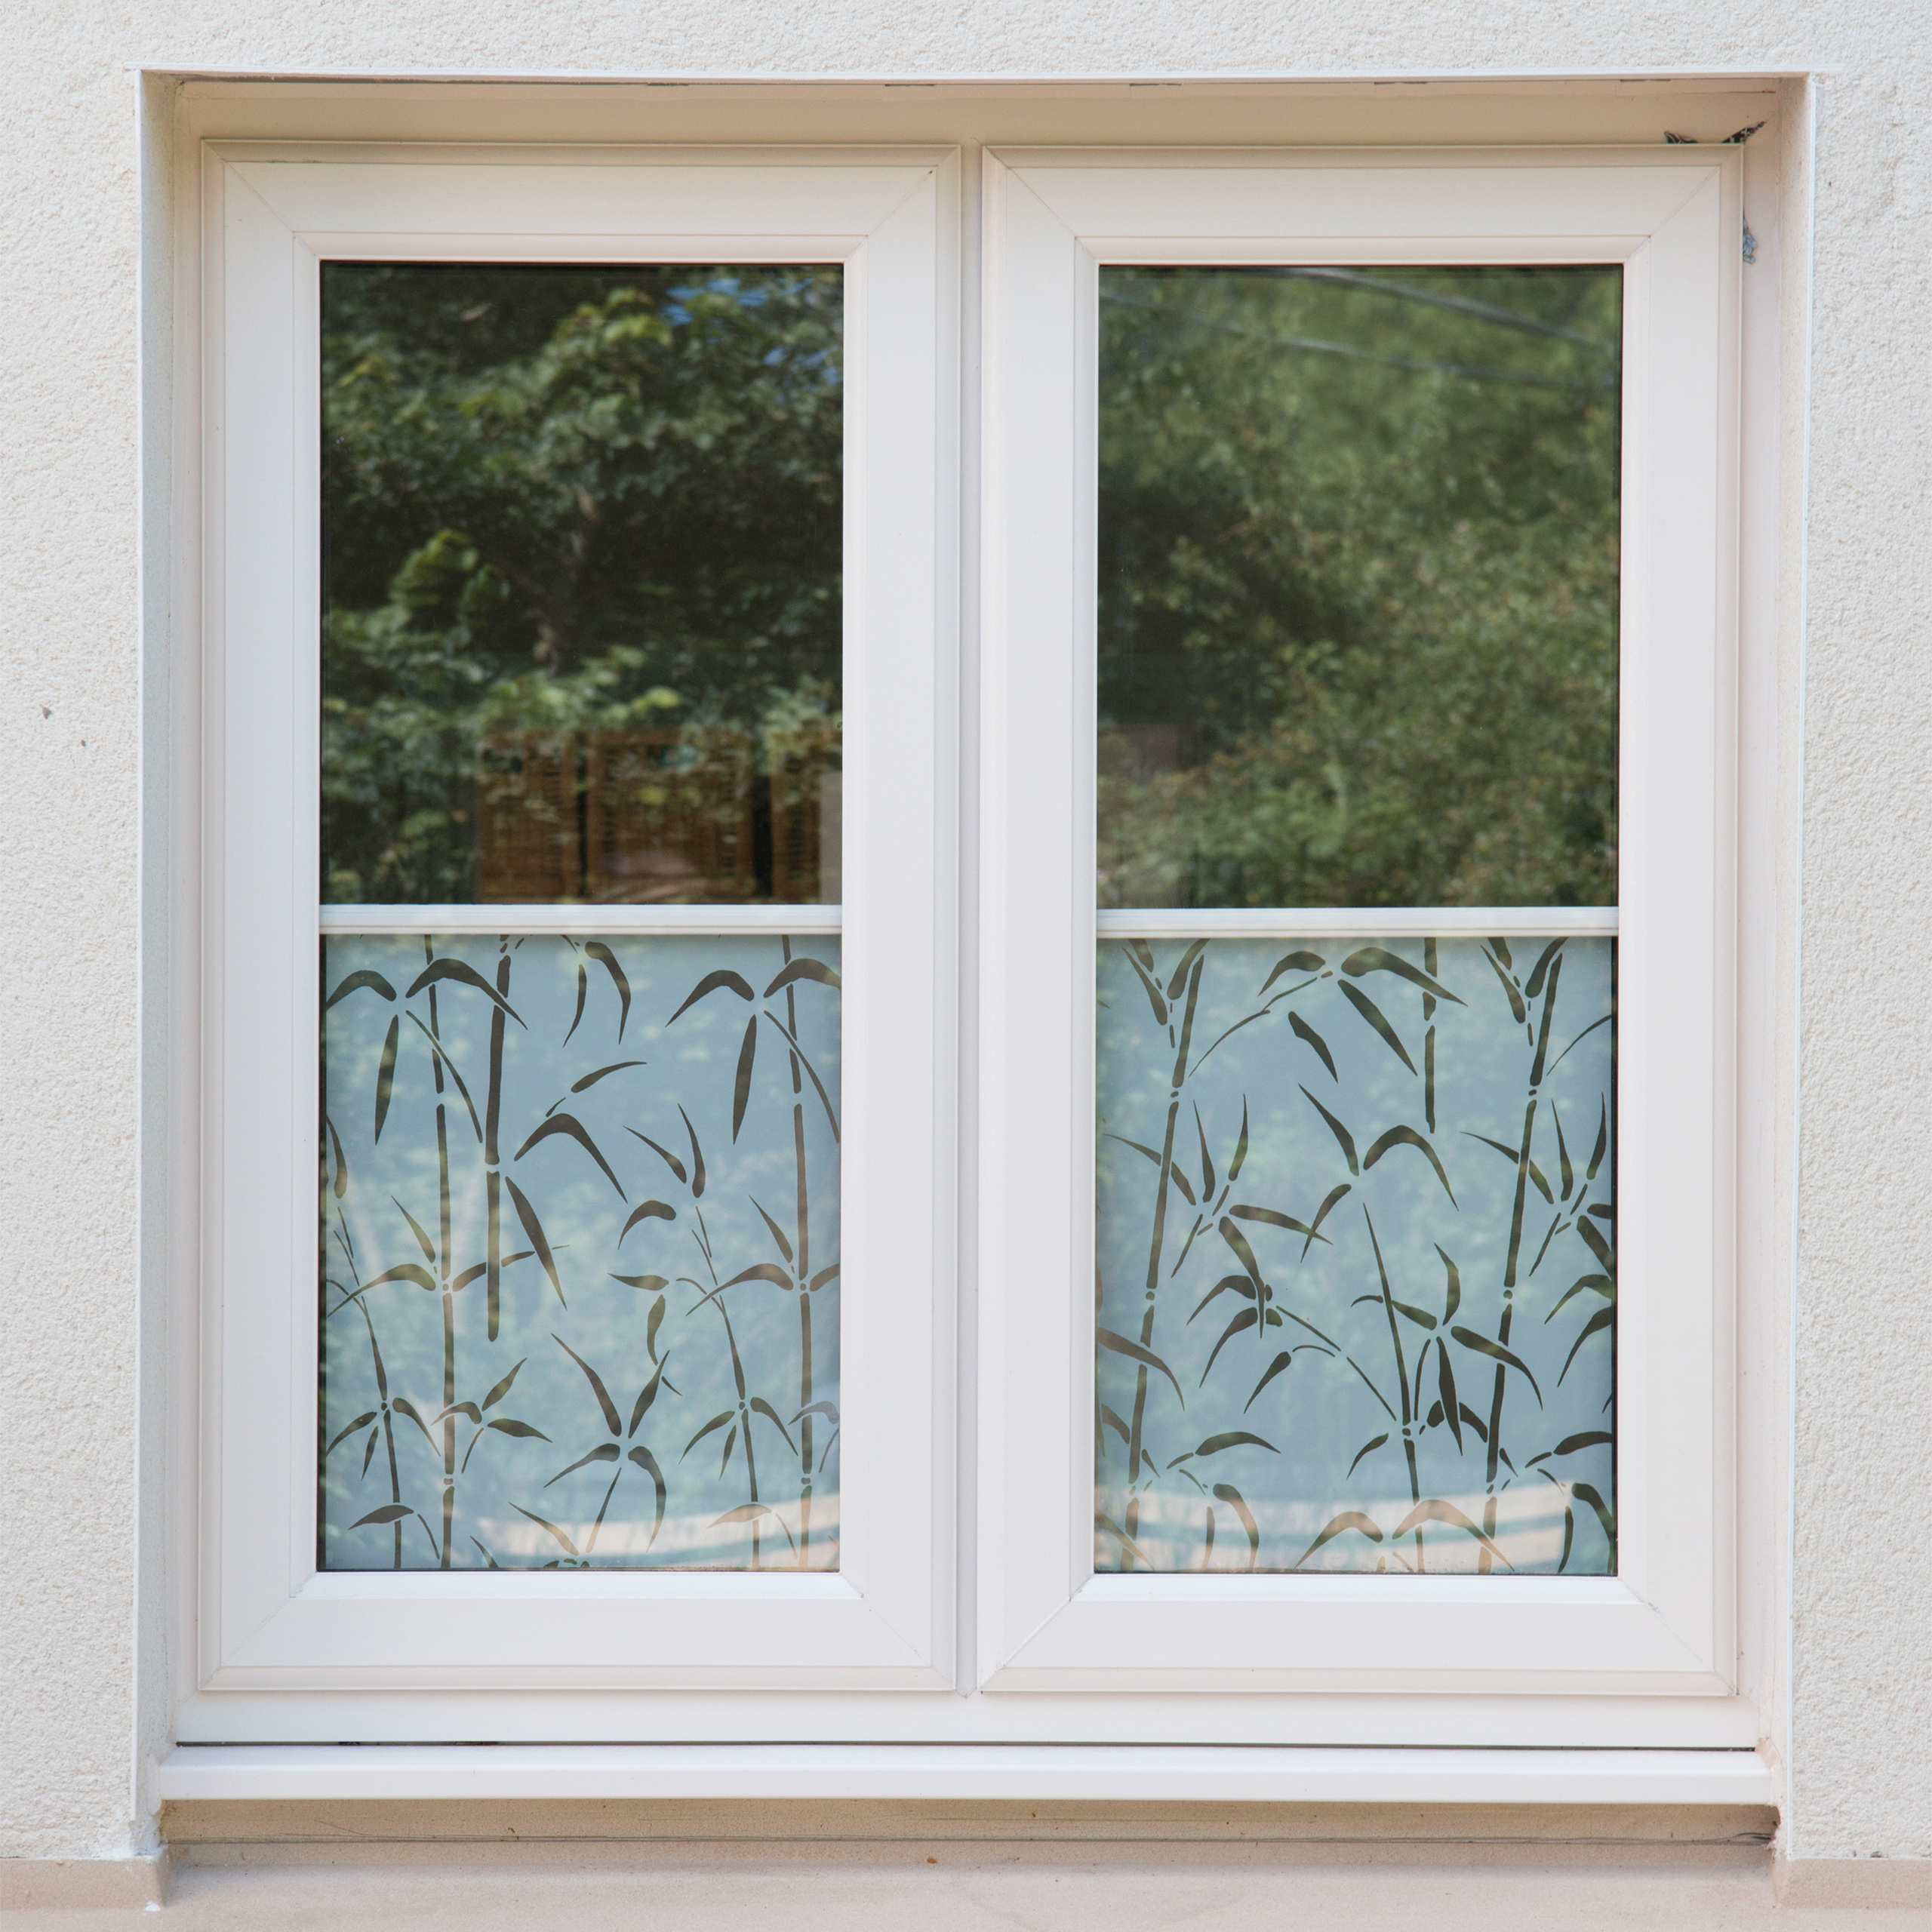 Fensterfolie Tulia 6,50€m² Selbstklebend Transparent Fenster Bunt  SichtschutzDIY